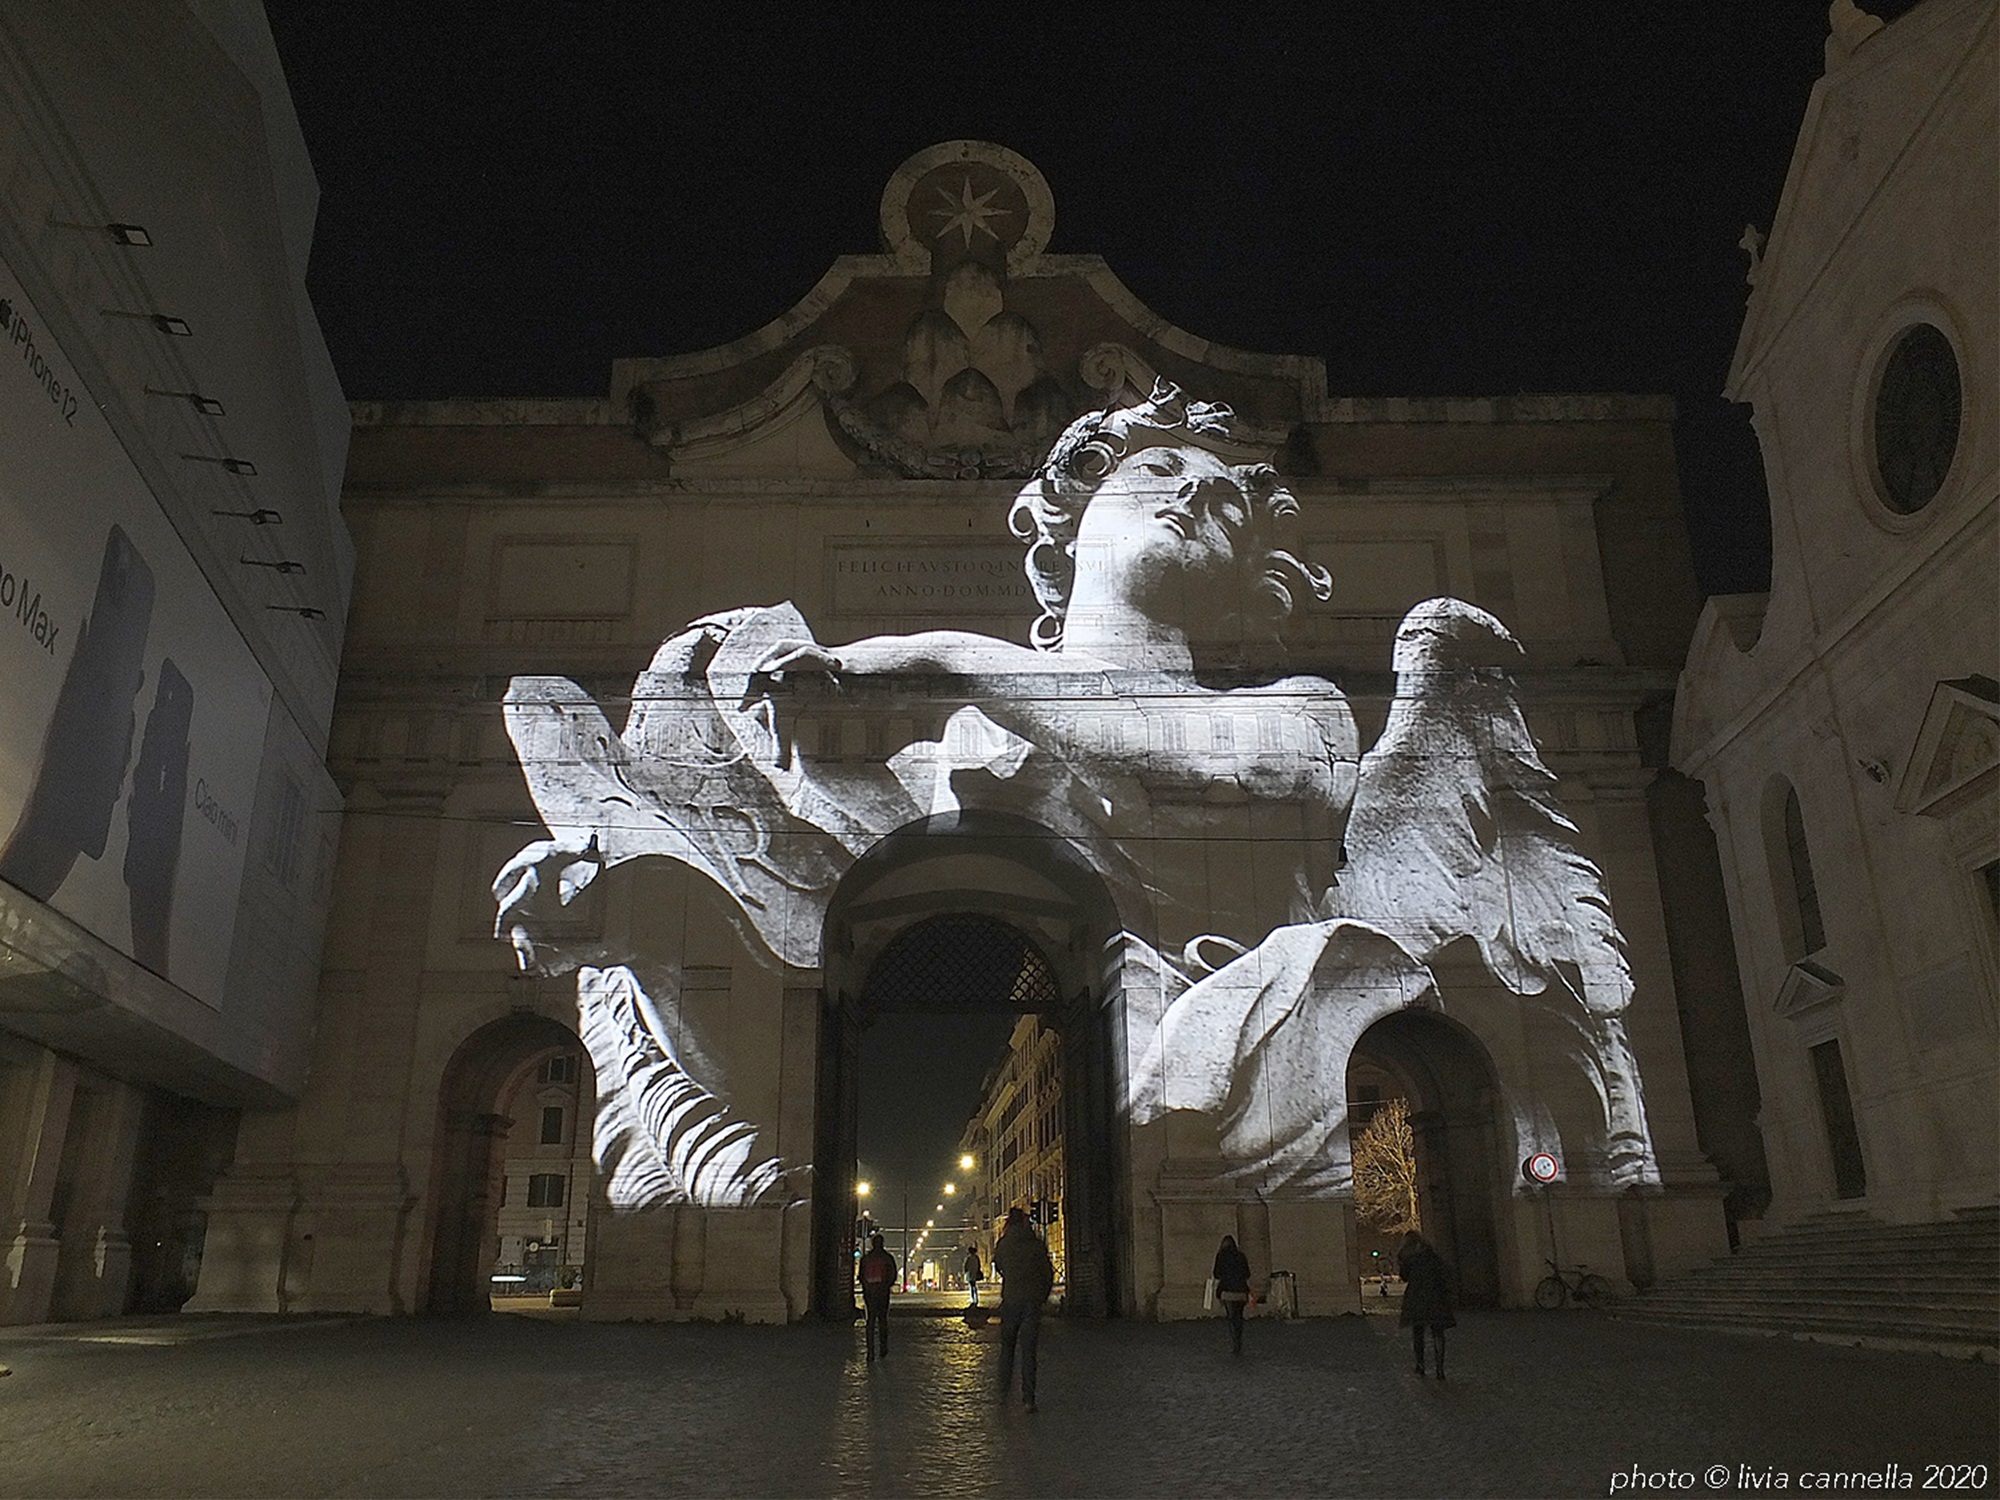 Luci di Natale a Roma. Proiezioni artistiche e videomapping fino al 6 gennaio